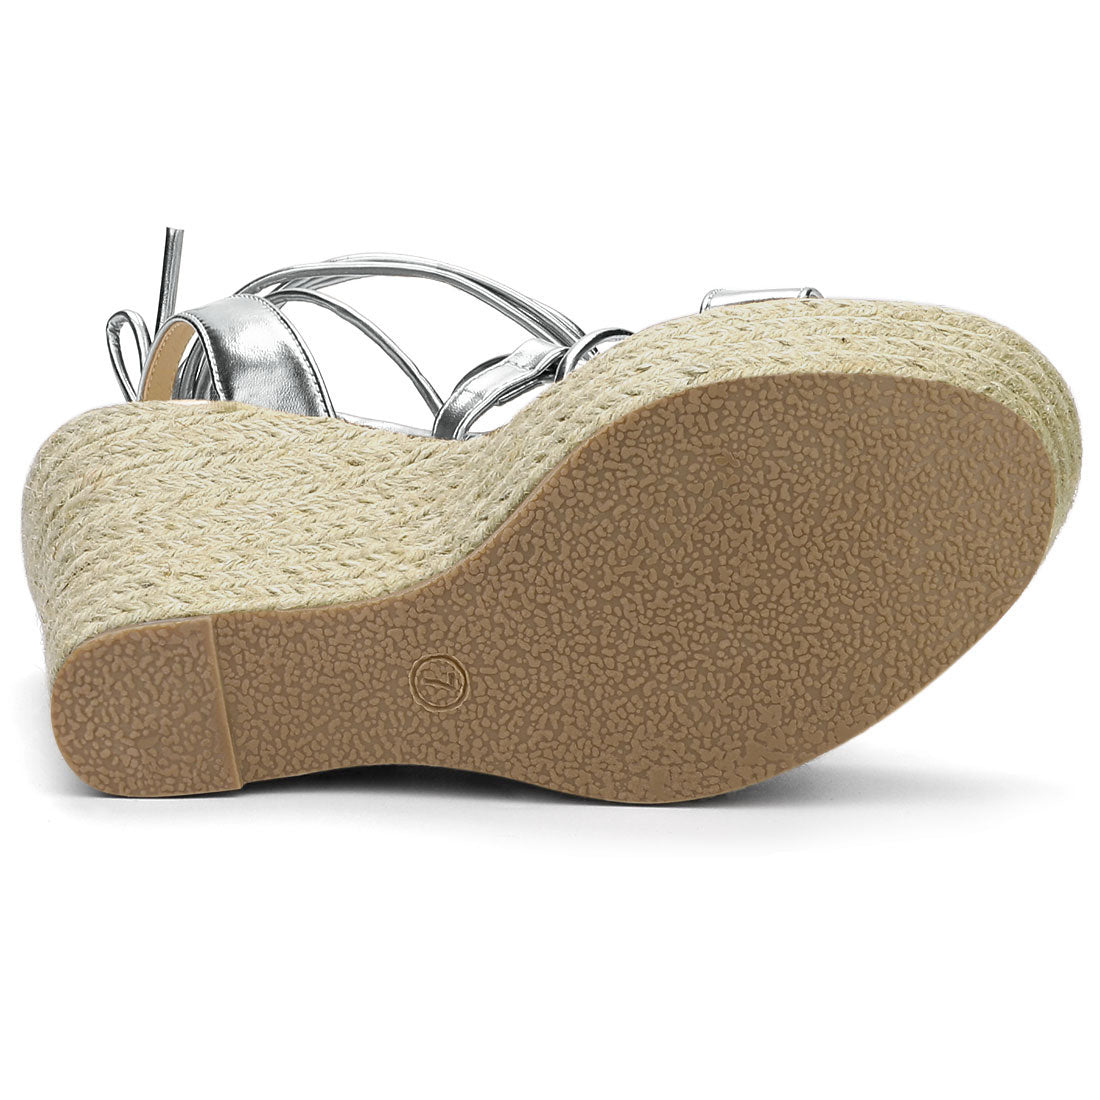 Allegra K Espadrilles Platform Wedges Heel Lace Up Sandals